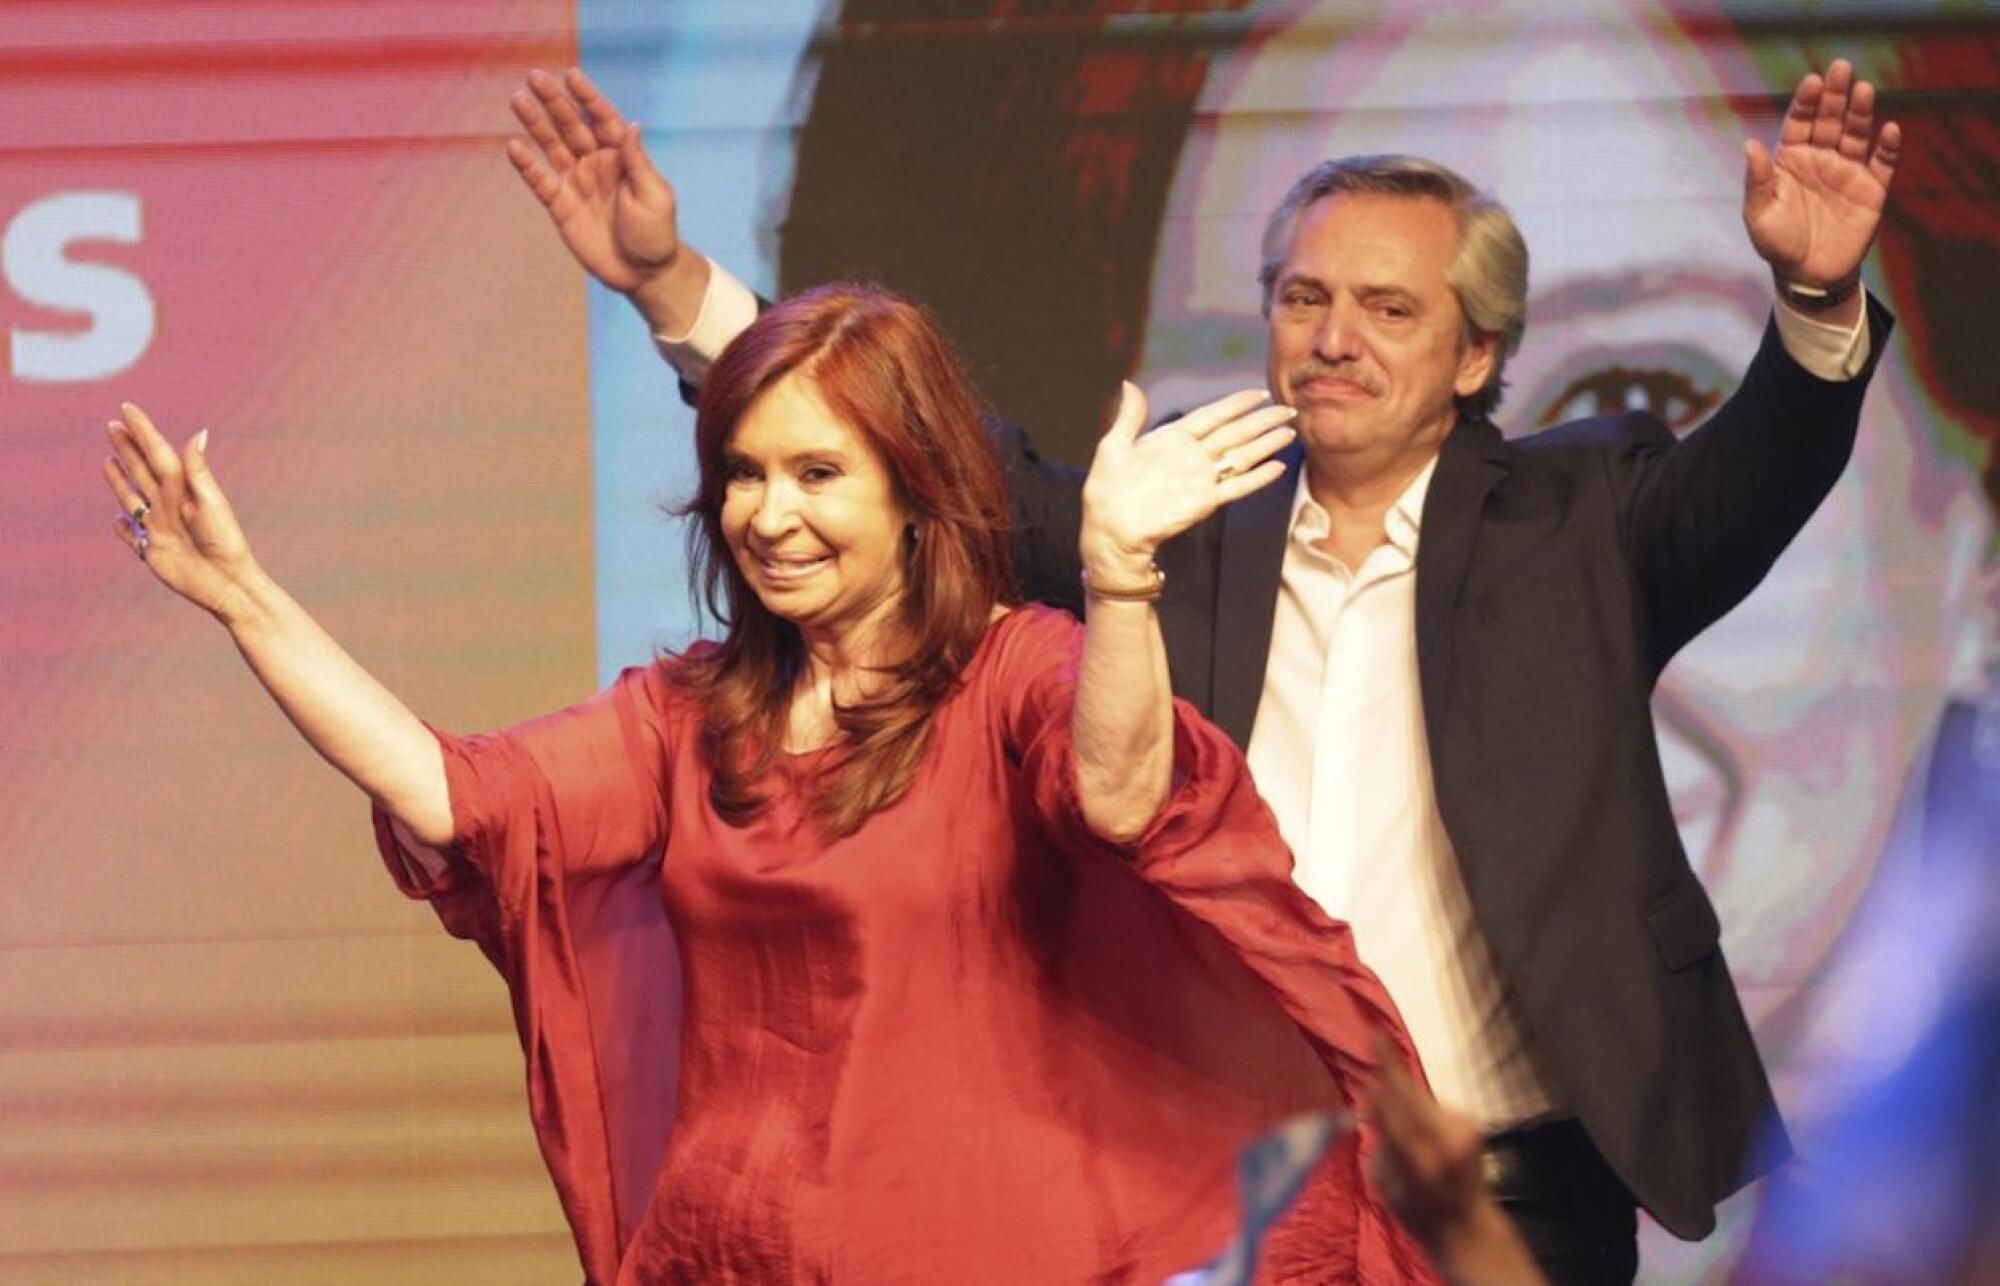 El candidato presidencial peronista Alberto Fernández y su compañera de fórmula, la ex presidenta Cristina Fernández